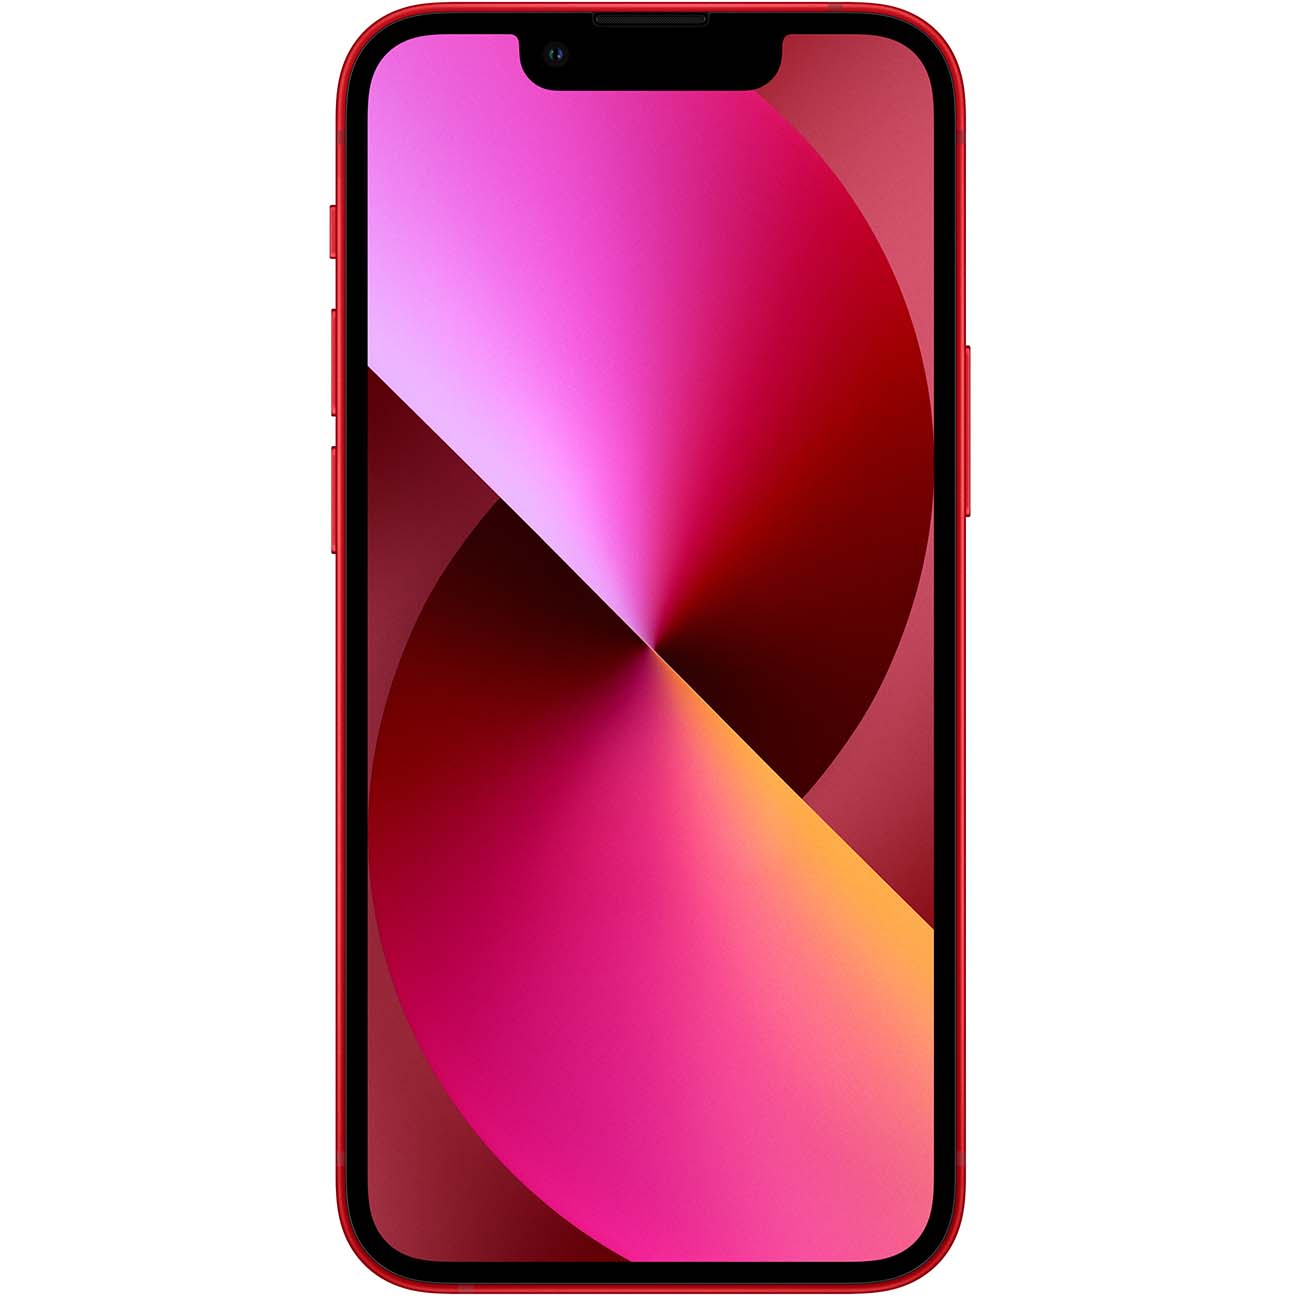 Купить смартфон apple iphone 13 mini 512gb (product) red Apple iPhone 13 mini в официальном магазине Apple, Samsung, Xiaomi. iPixel.ru Купить, заказ, кредит, рассрочка, отзывы,  характеристики, цена,  фотографии, в подарок.